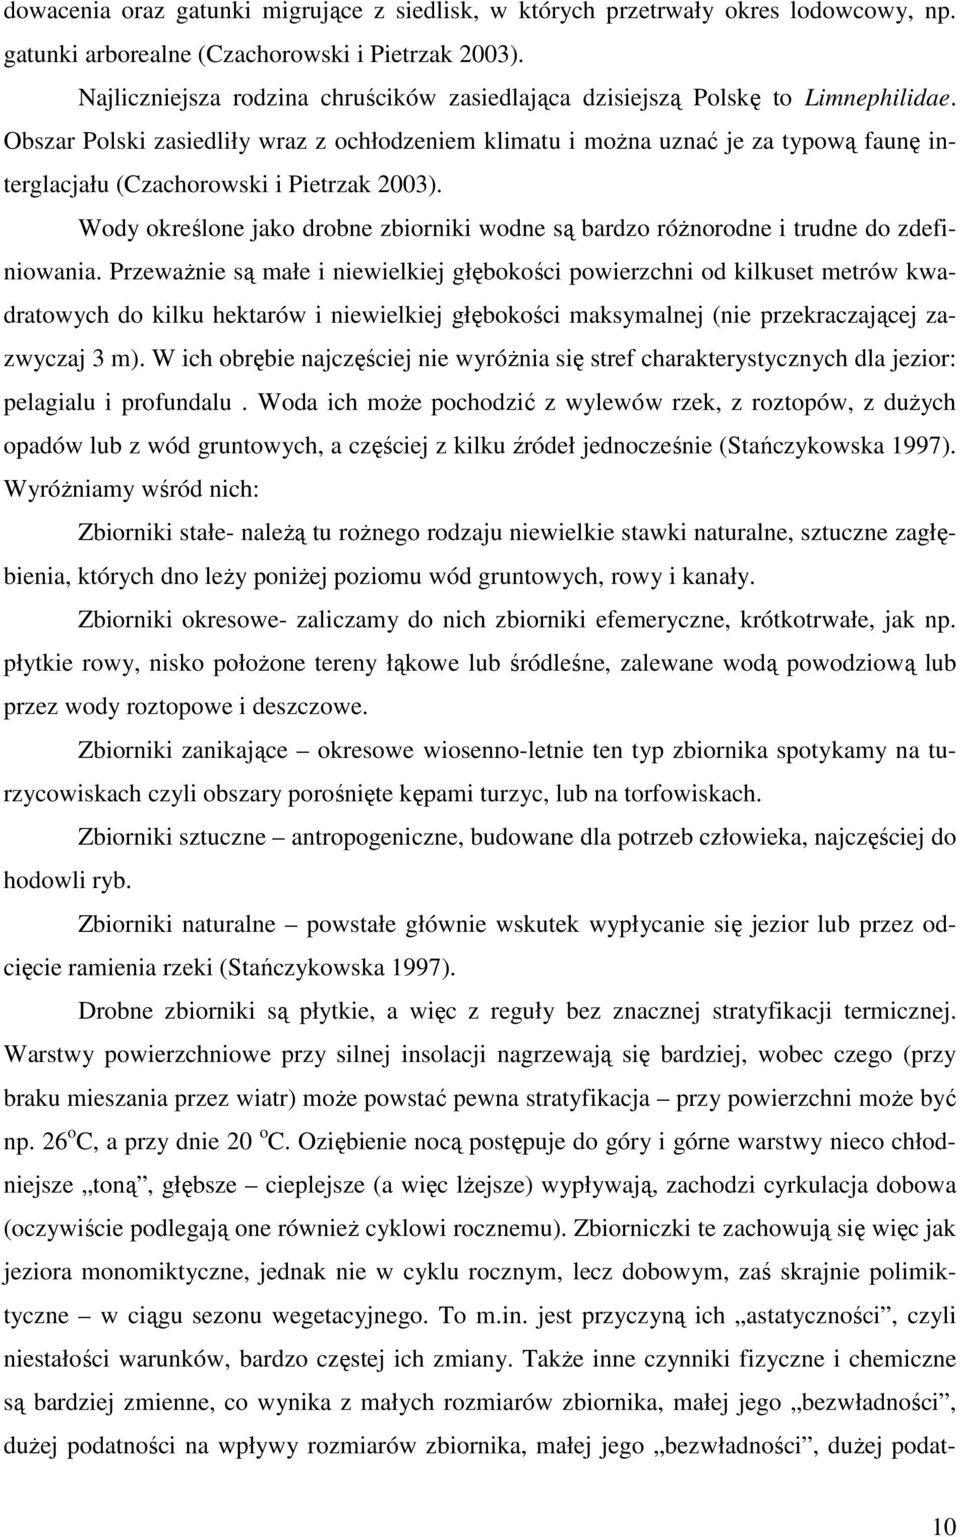 Obszar Polski zasiedliły wraz z ochłodzeniem klimatu i moŝna uznać je za typową faunę interglacjału (Czachorowski i Pietrzak 2003).